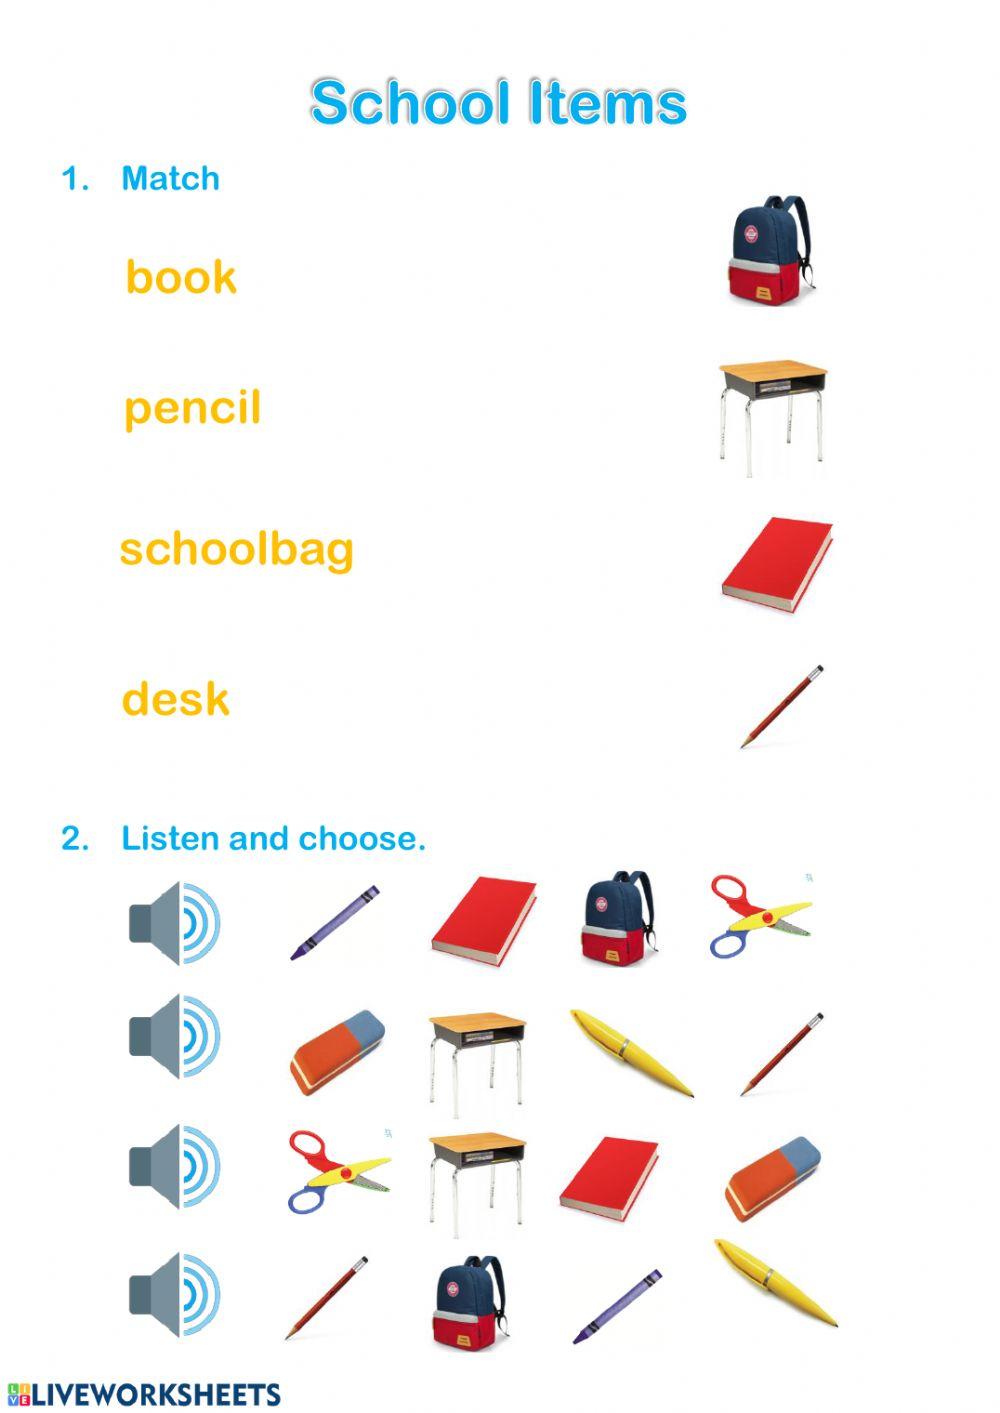 School Items:Book, pencil, schoolbag, desk.